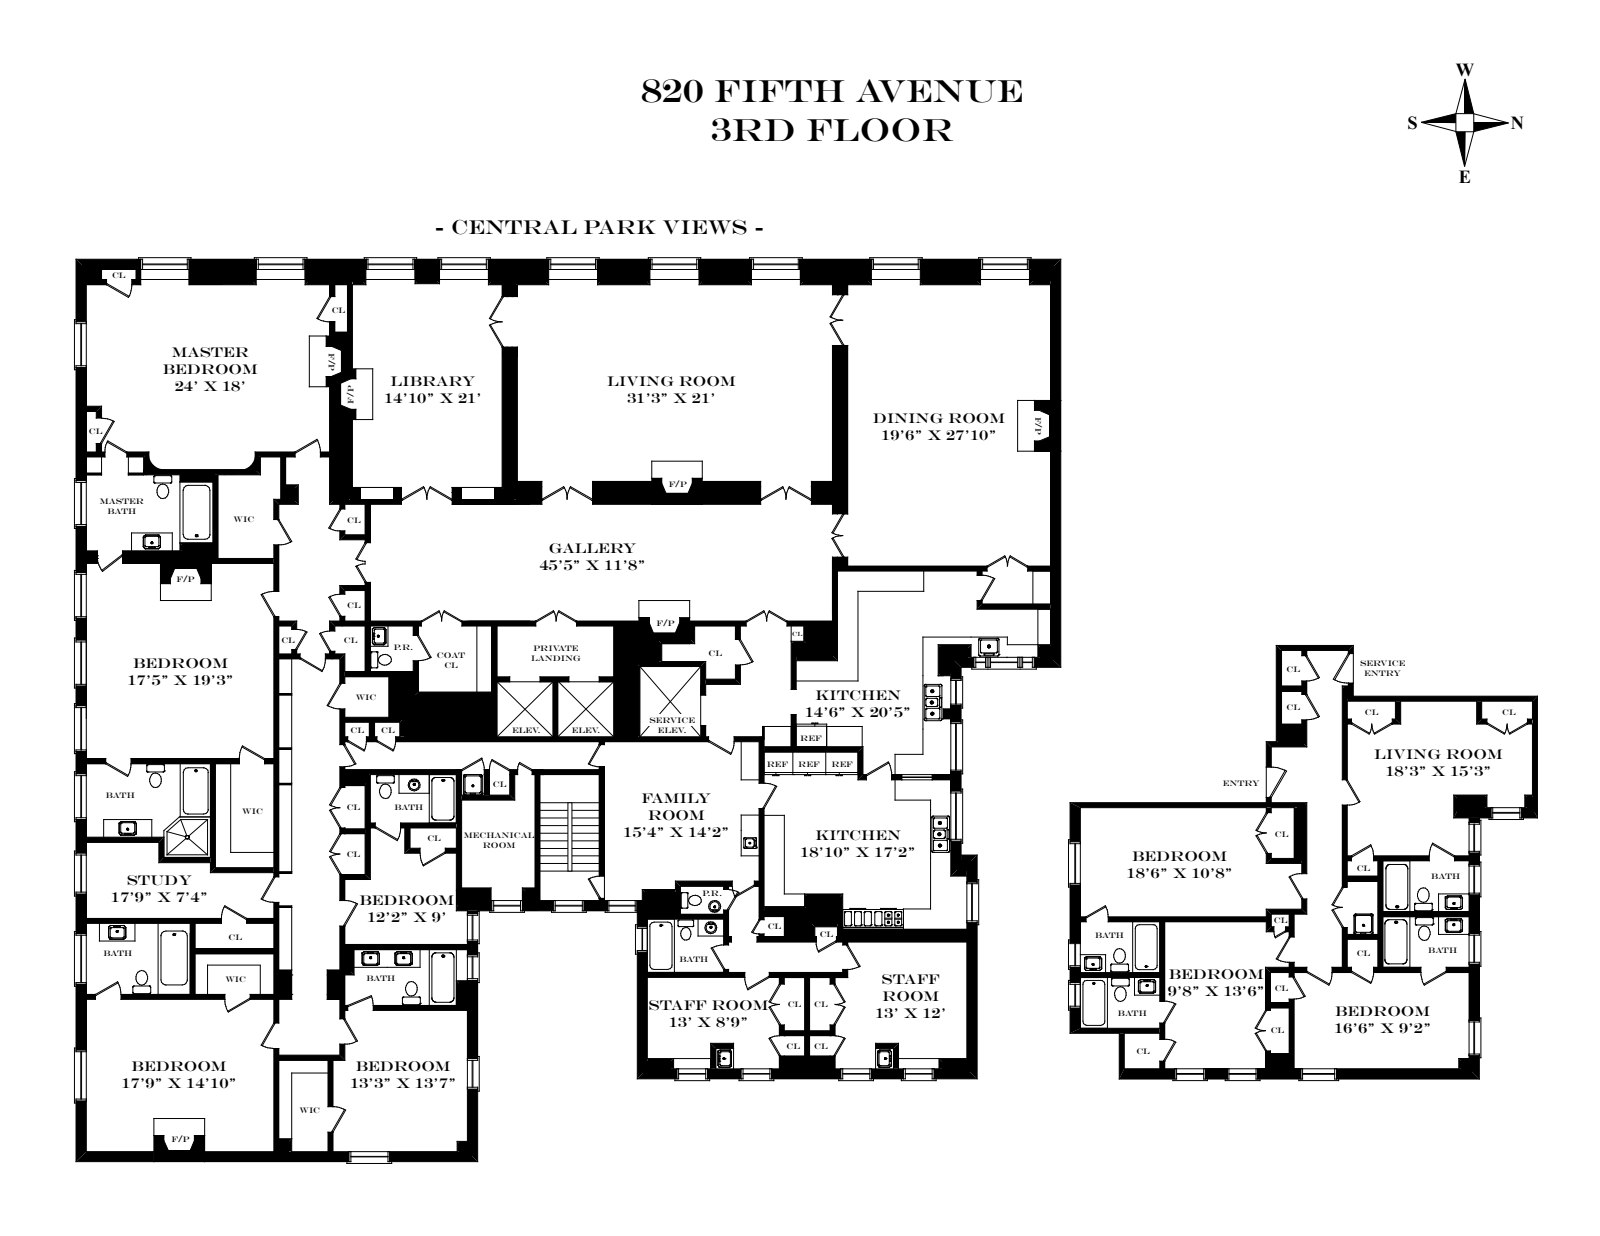 Floorplan for 820 Fifth Avenue, 3FL